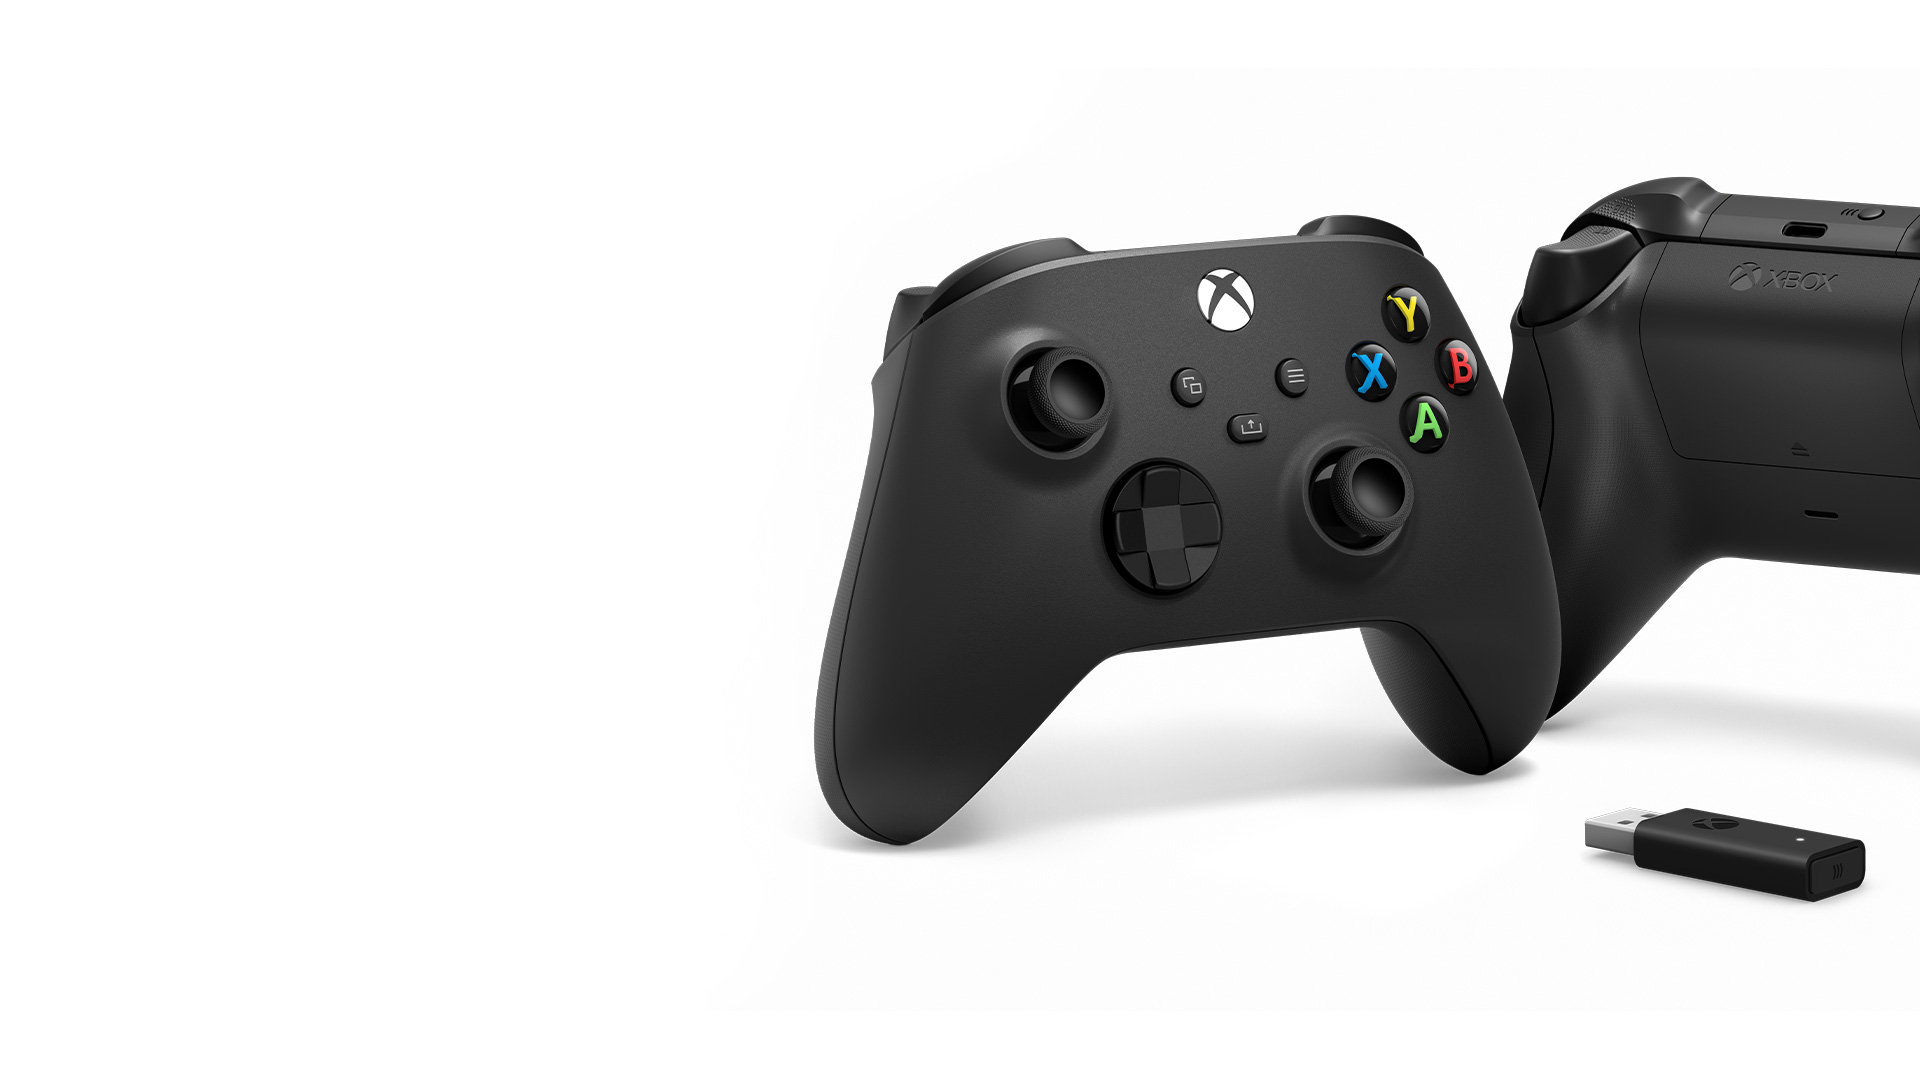 Az Xbox vezeték nélküli kontroller elülső és hátsó része a vezeték nélküli adapterrel